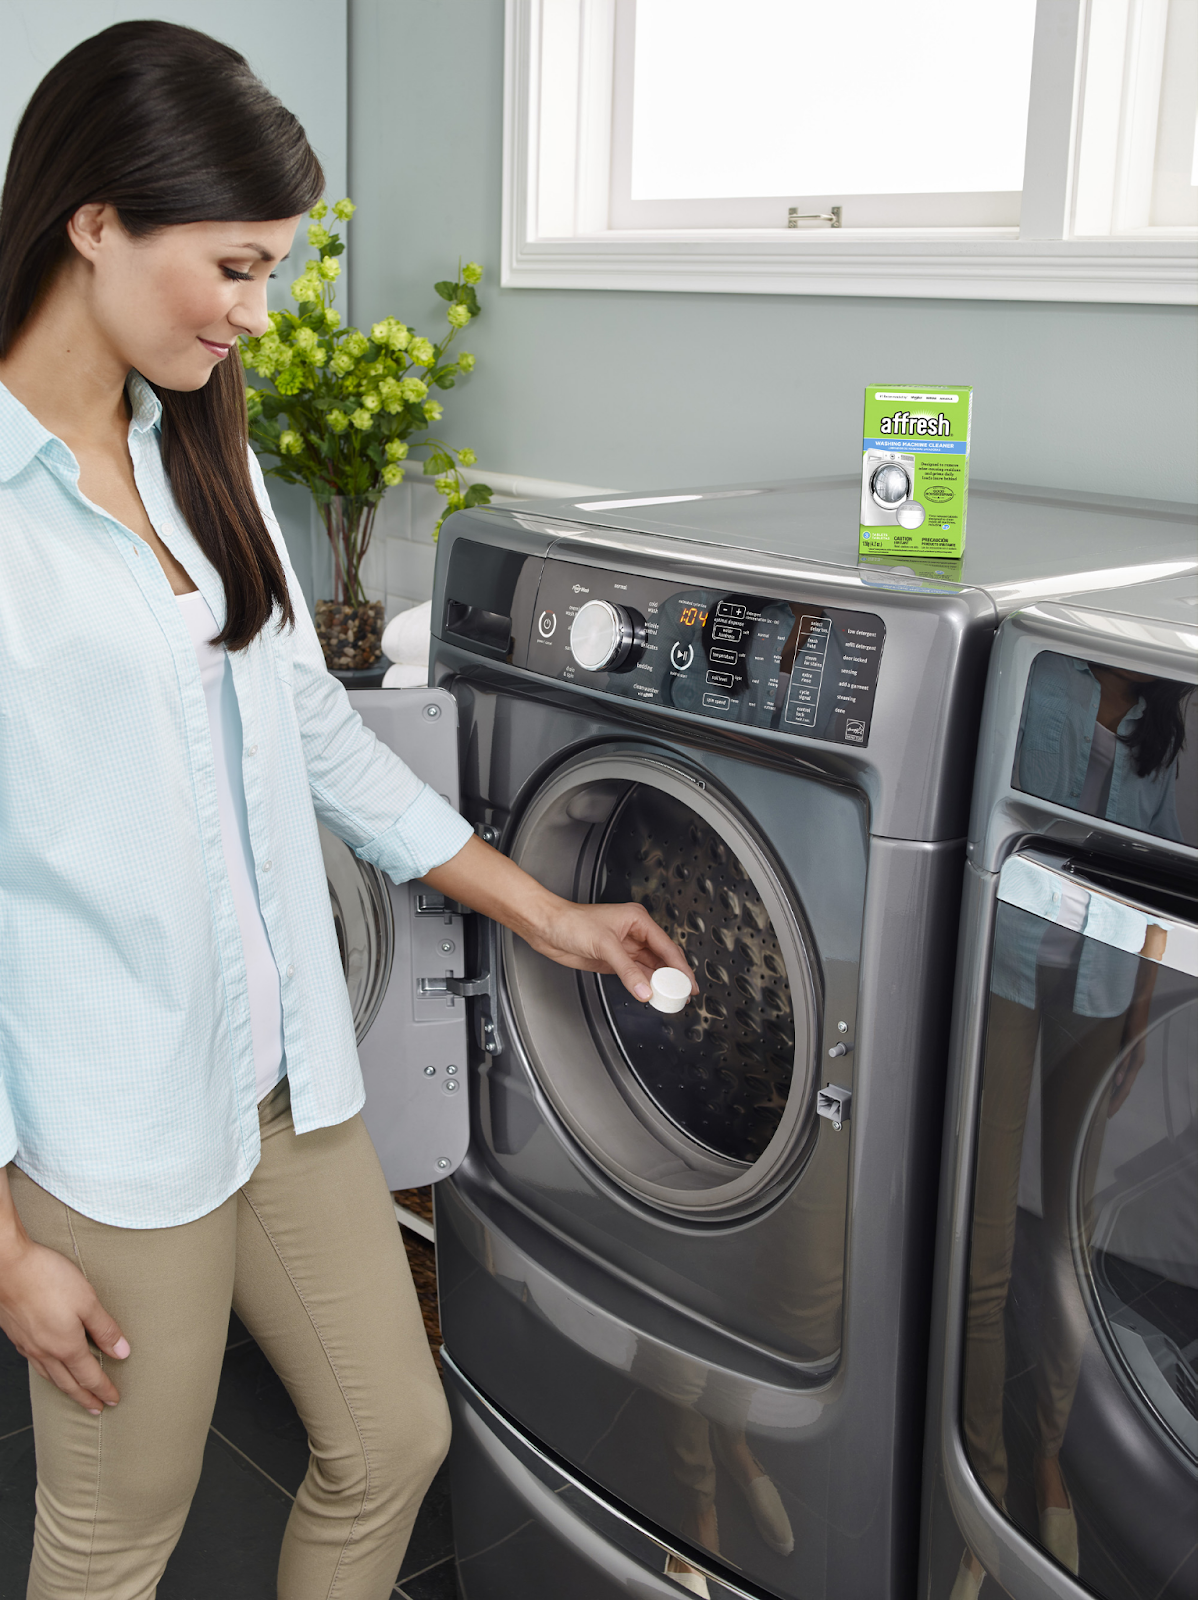 Viên giặt lau chùi và vệ sinh máy là thành phầm tiện lợi 